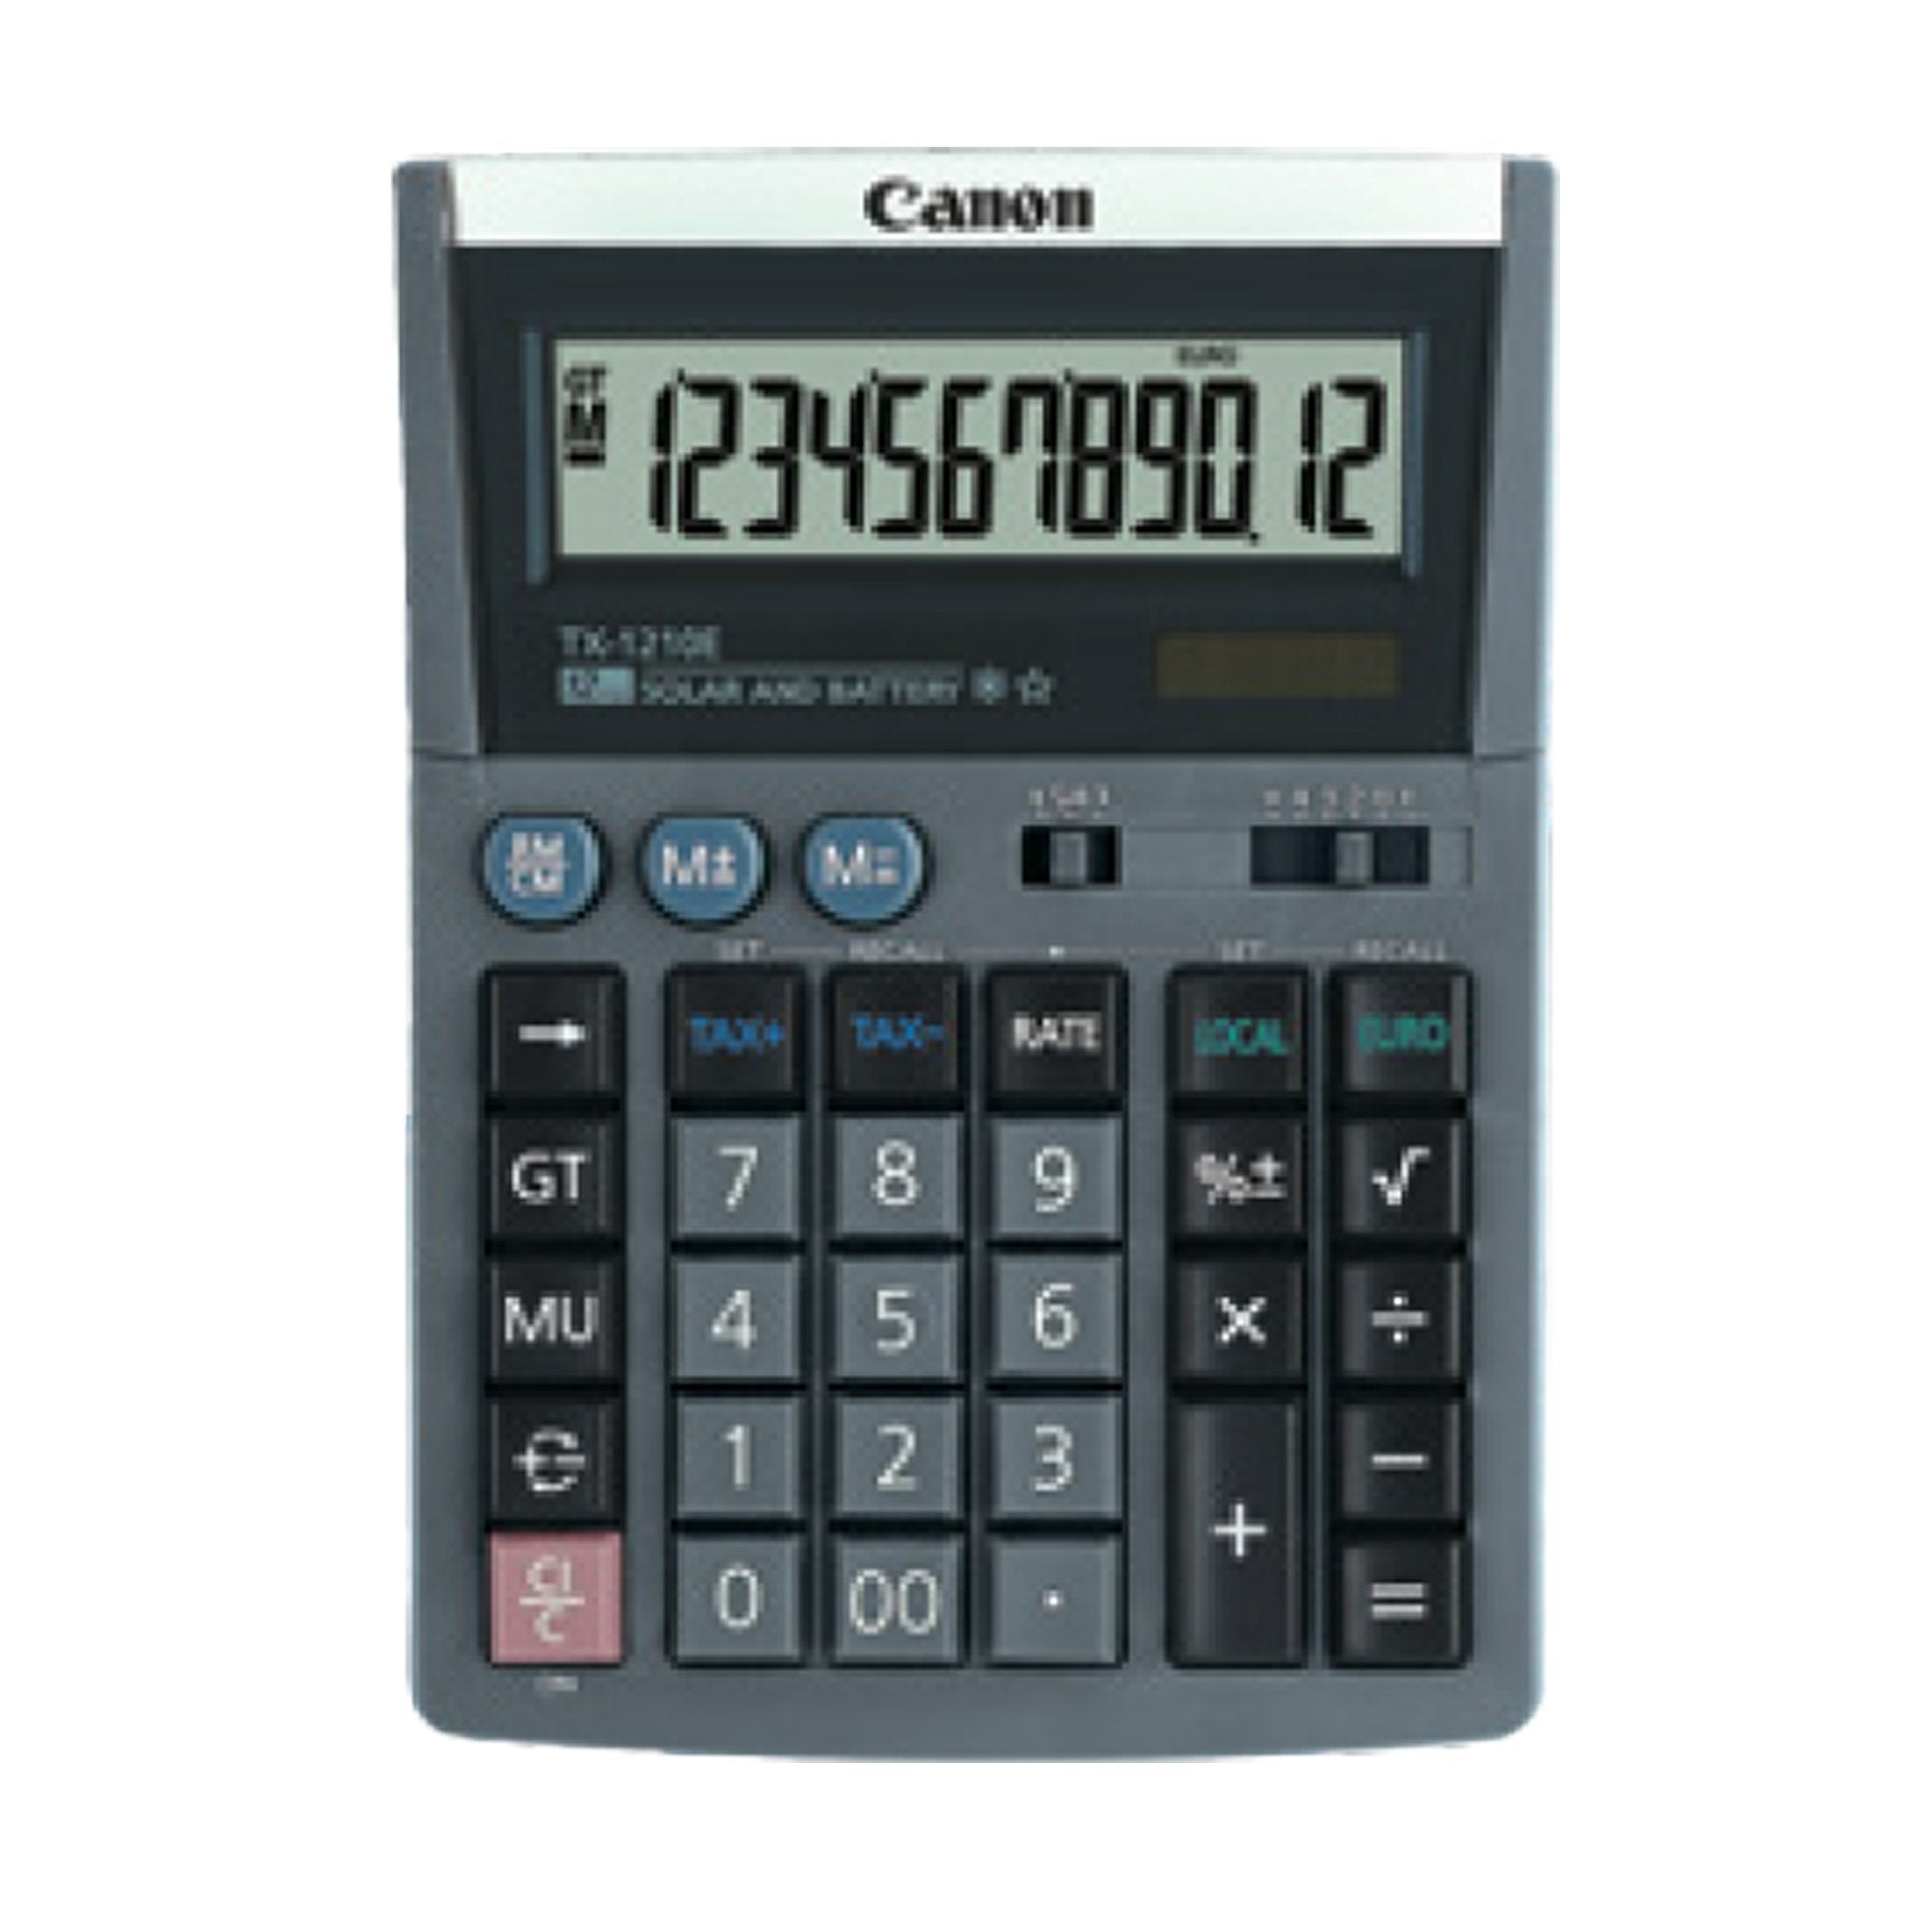 canon-calcolatrice-tx-1210e-dbl-emea-grigio